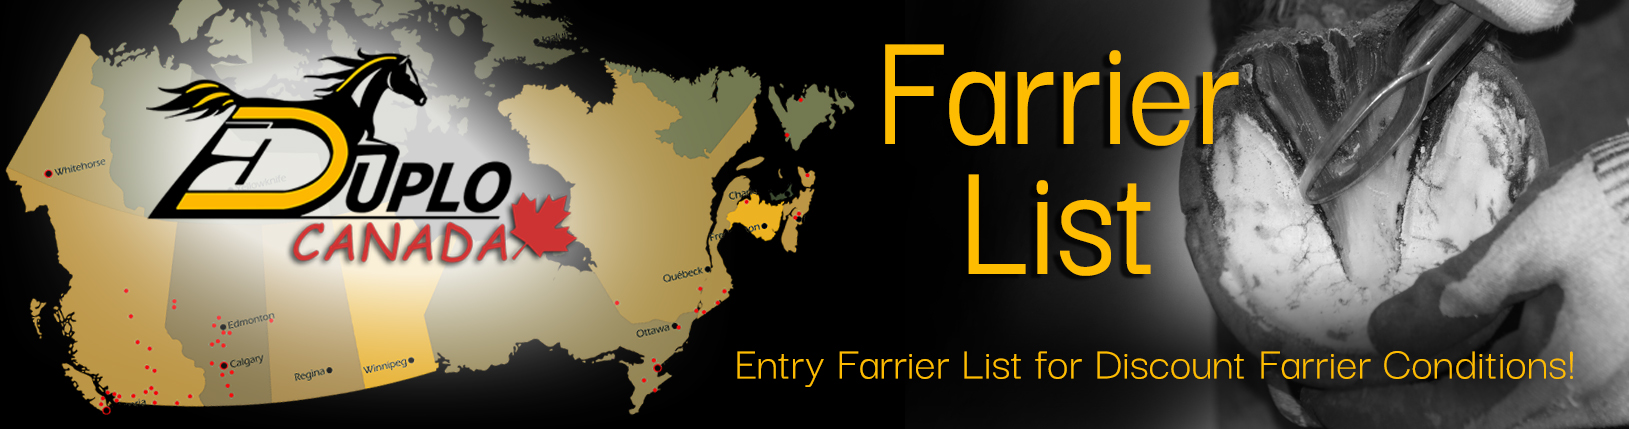 Farrier List